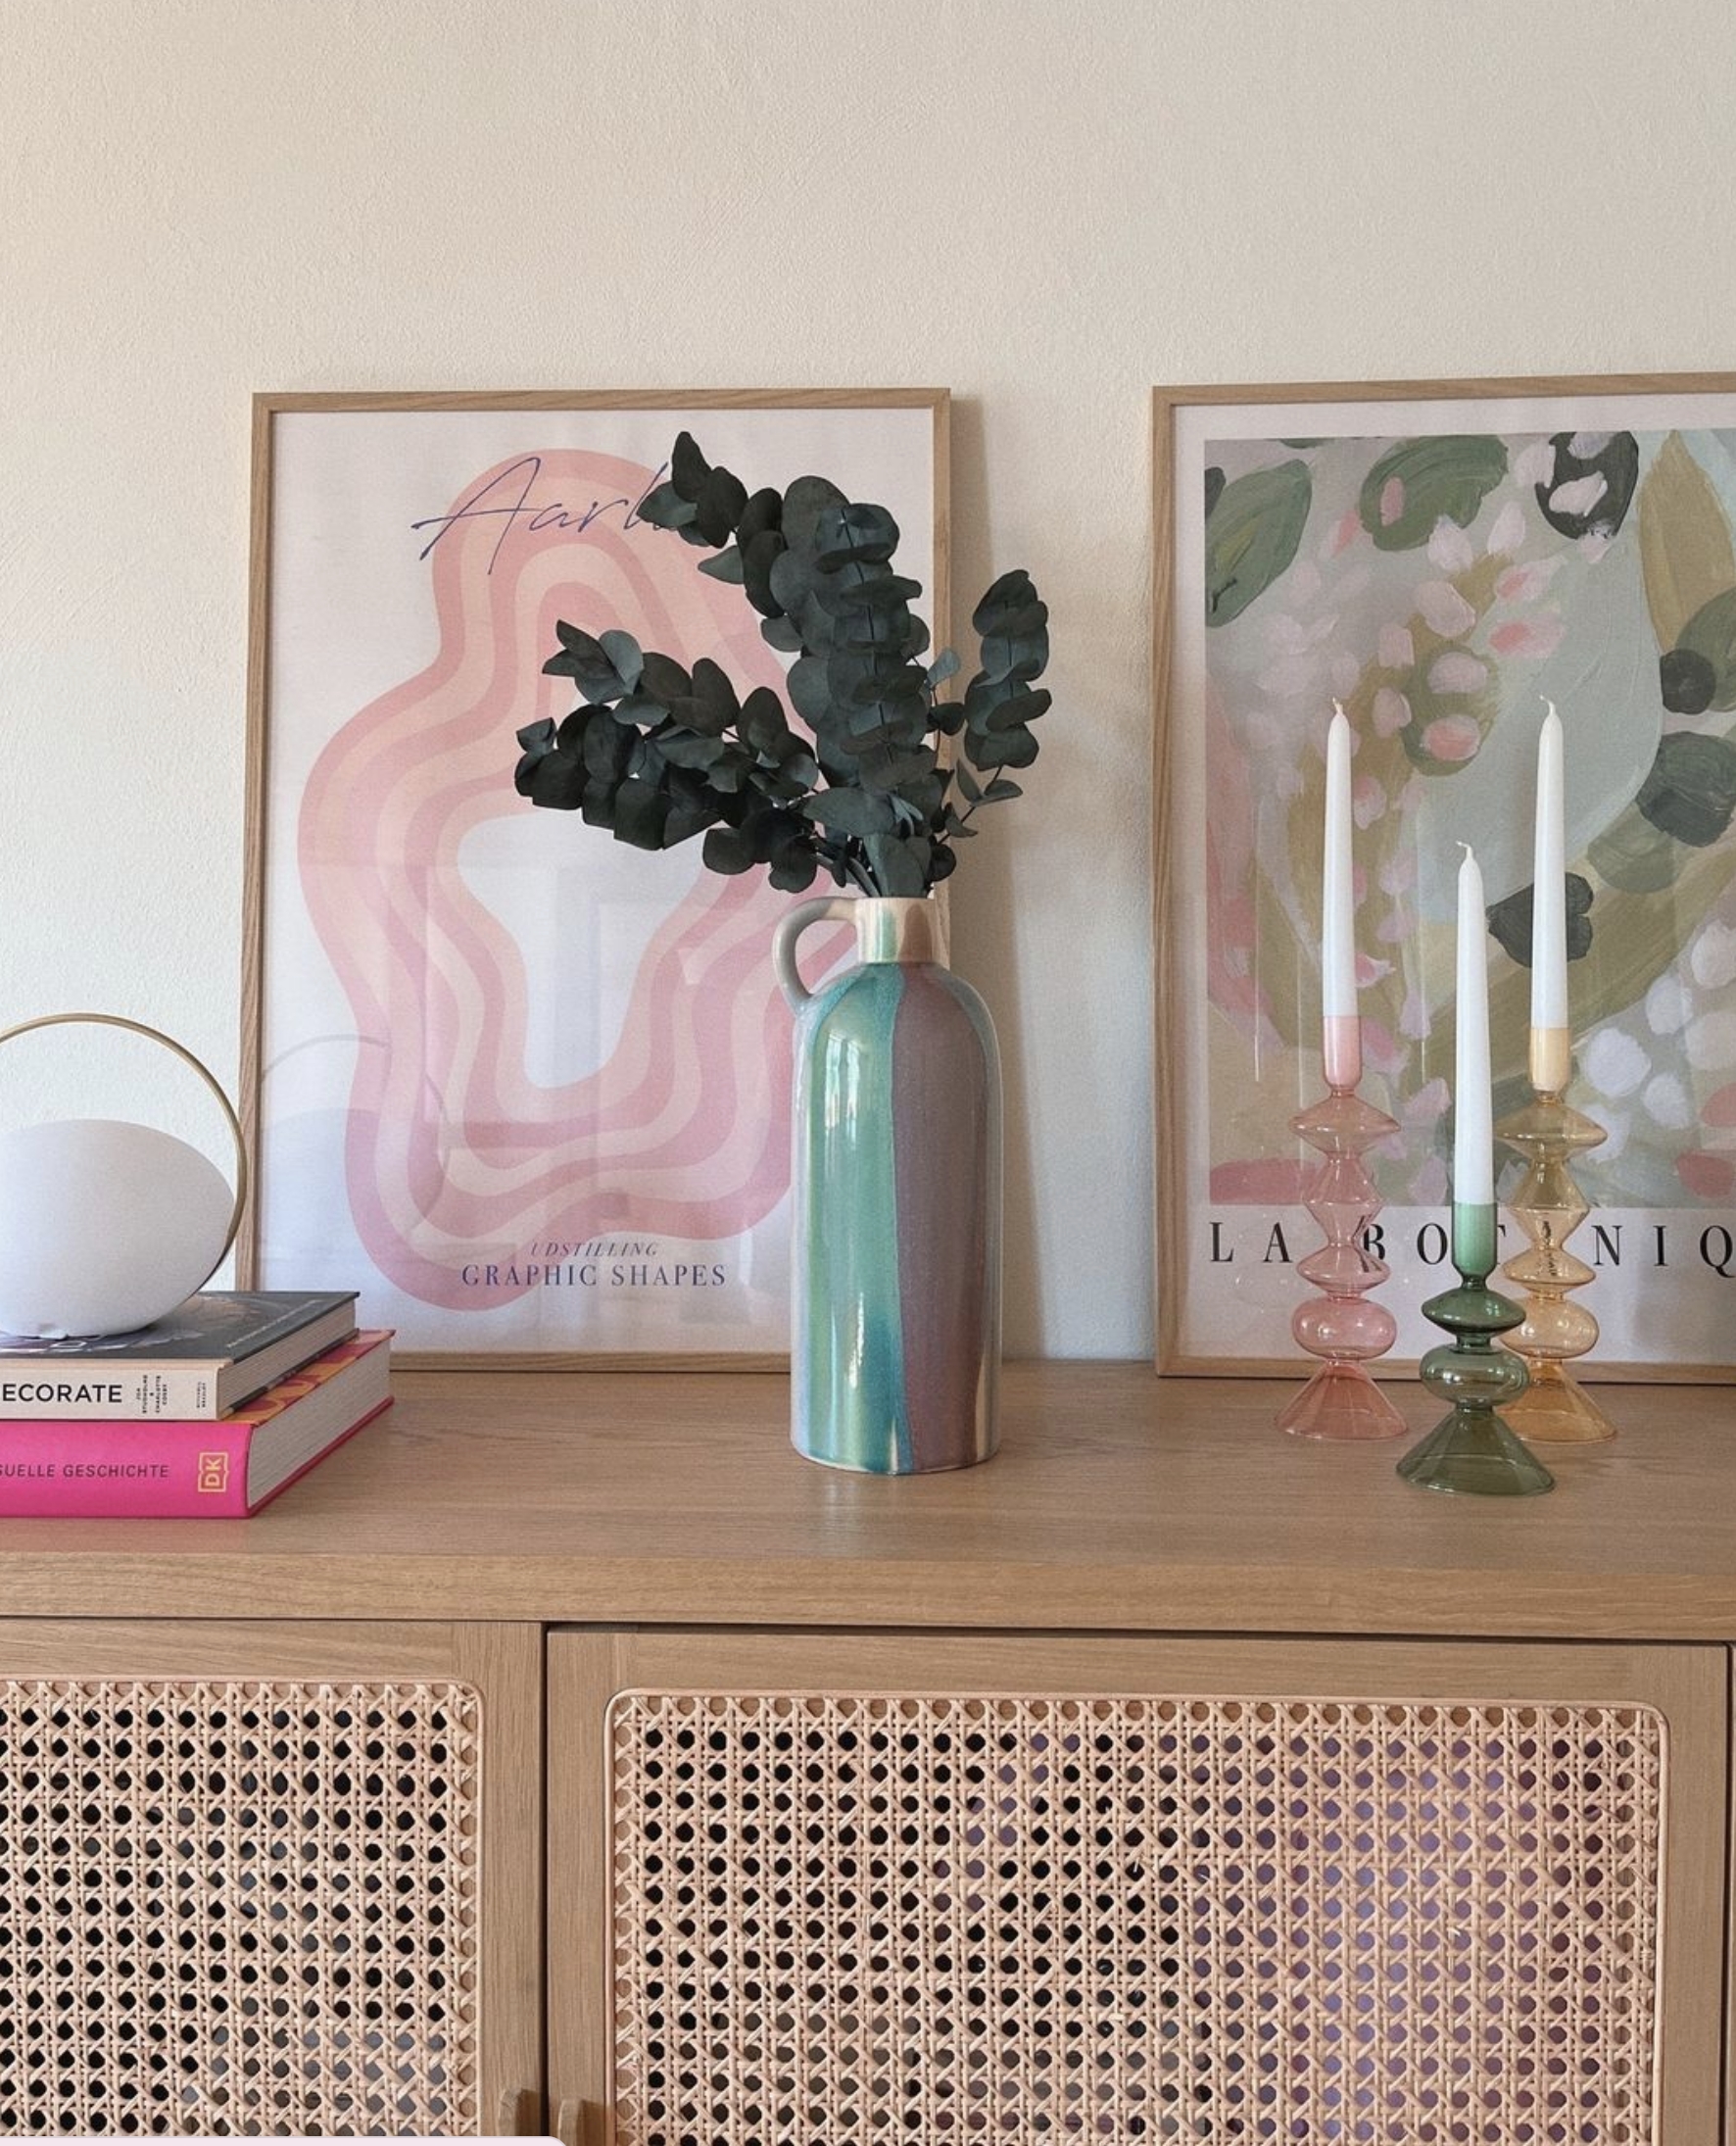 Einfach in Liebe mit dieser Vase aus der Toscana 🤍
#wohnzimmer #altbau #landhaus #deko #vase